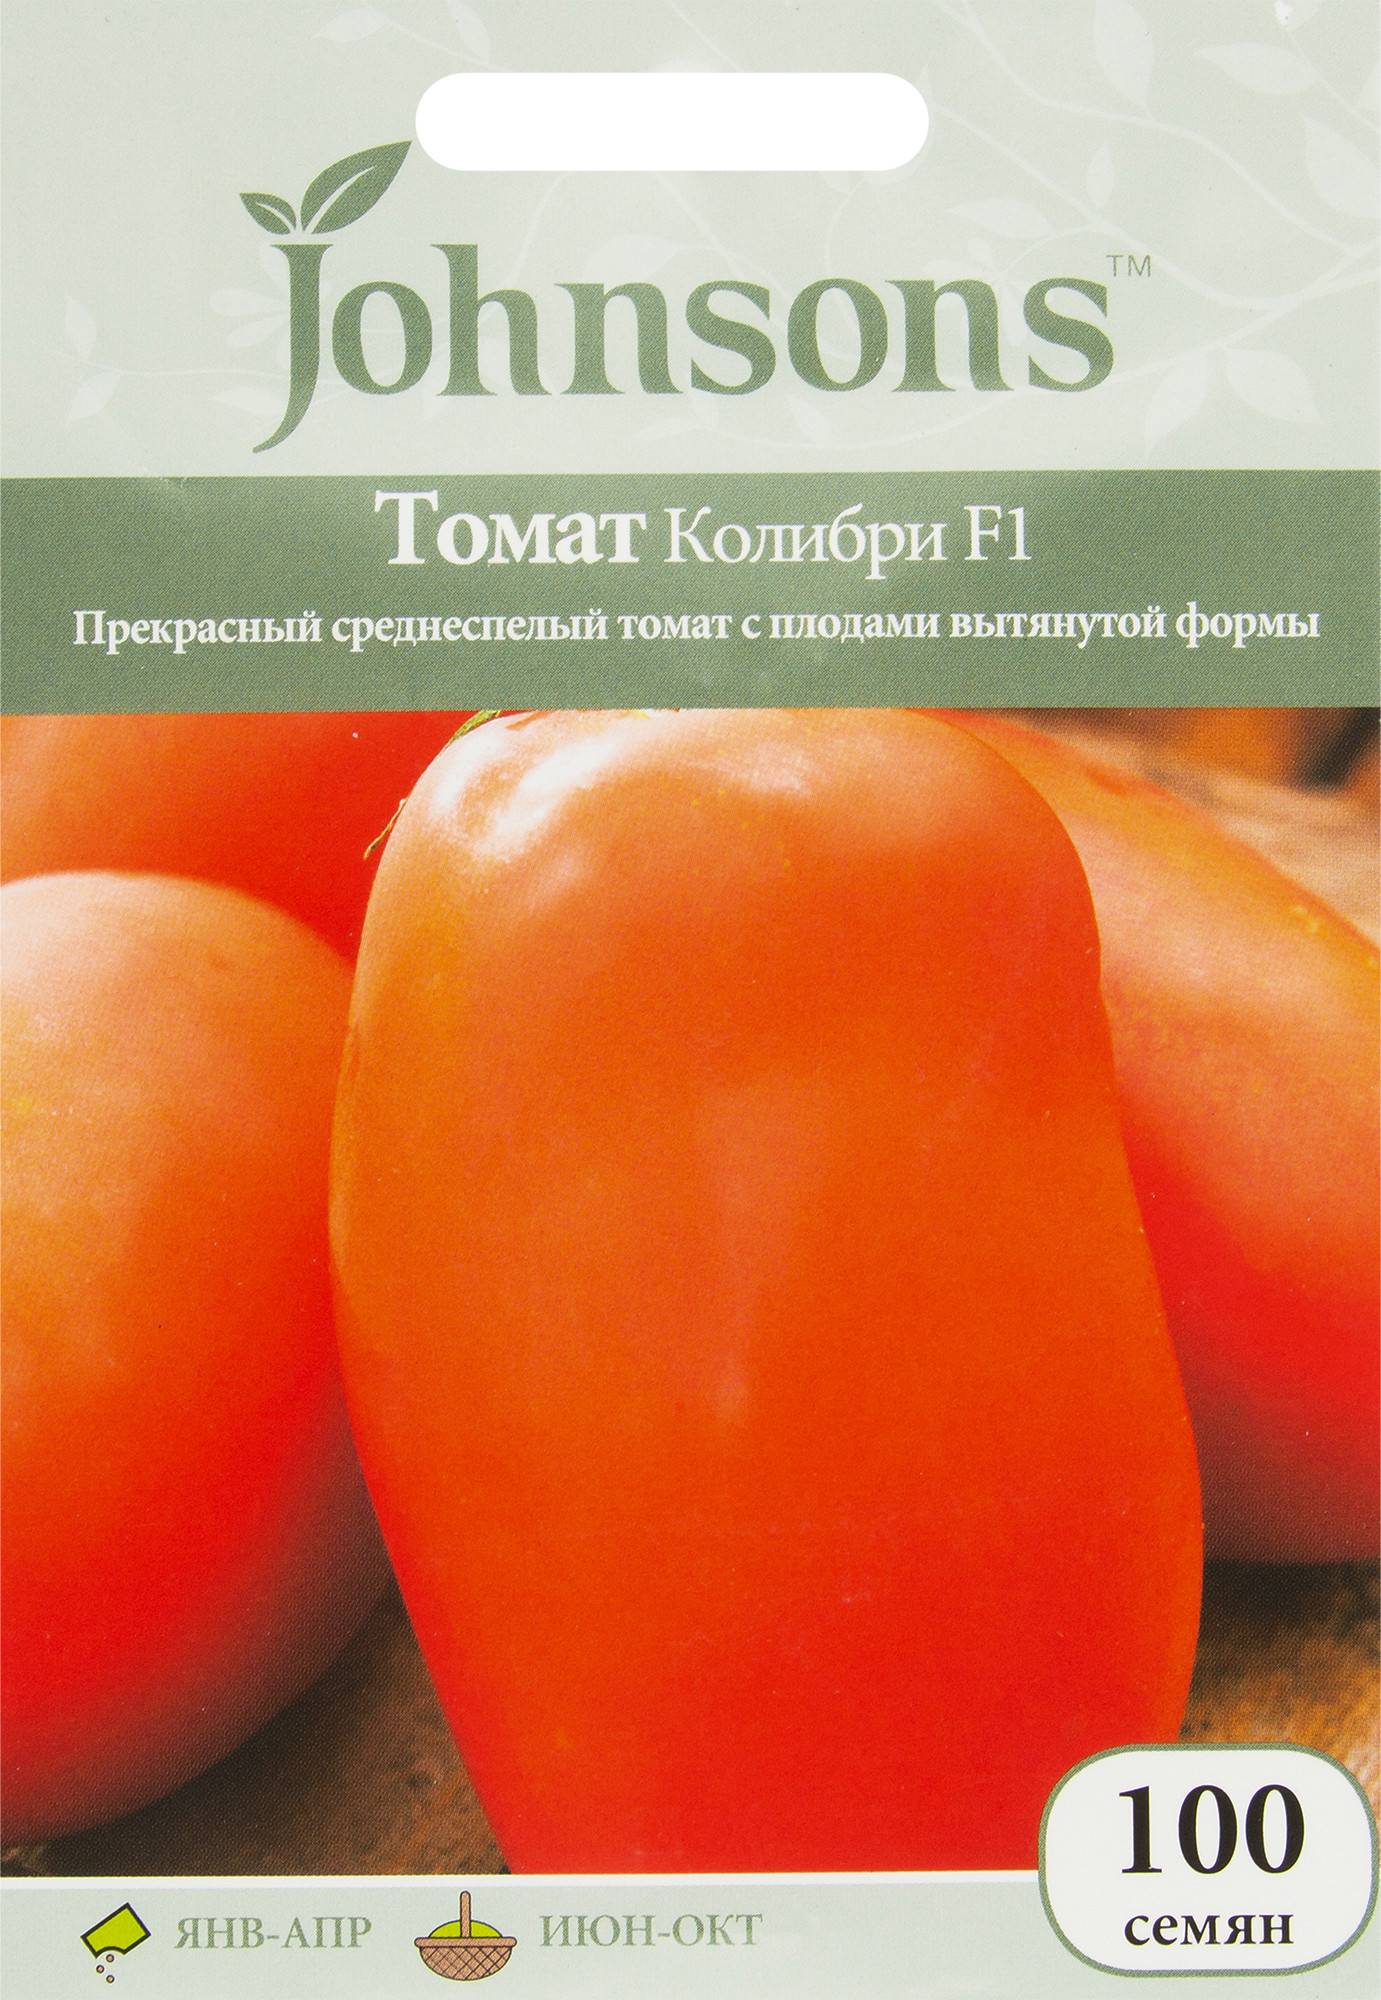 Томат бенито f1: описание урожайного гибрида, отзывы и особенности его выращивания